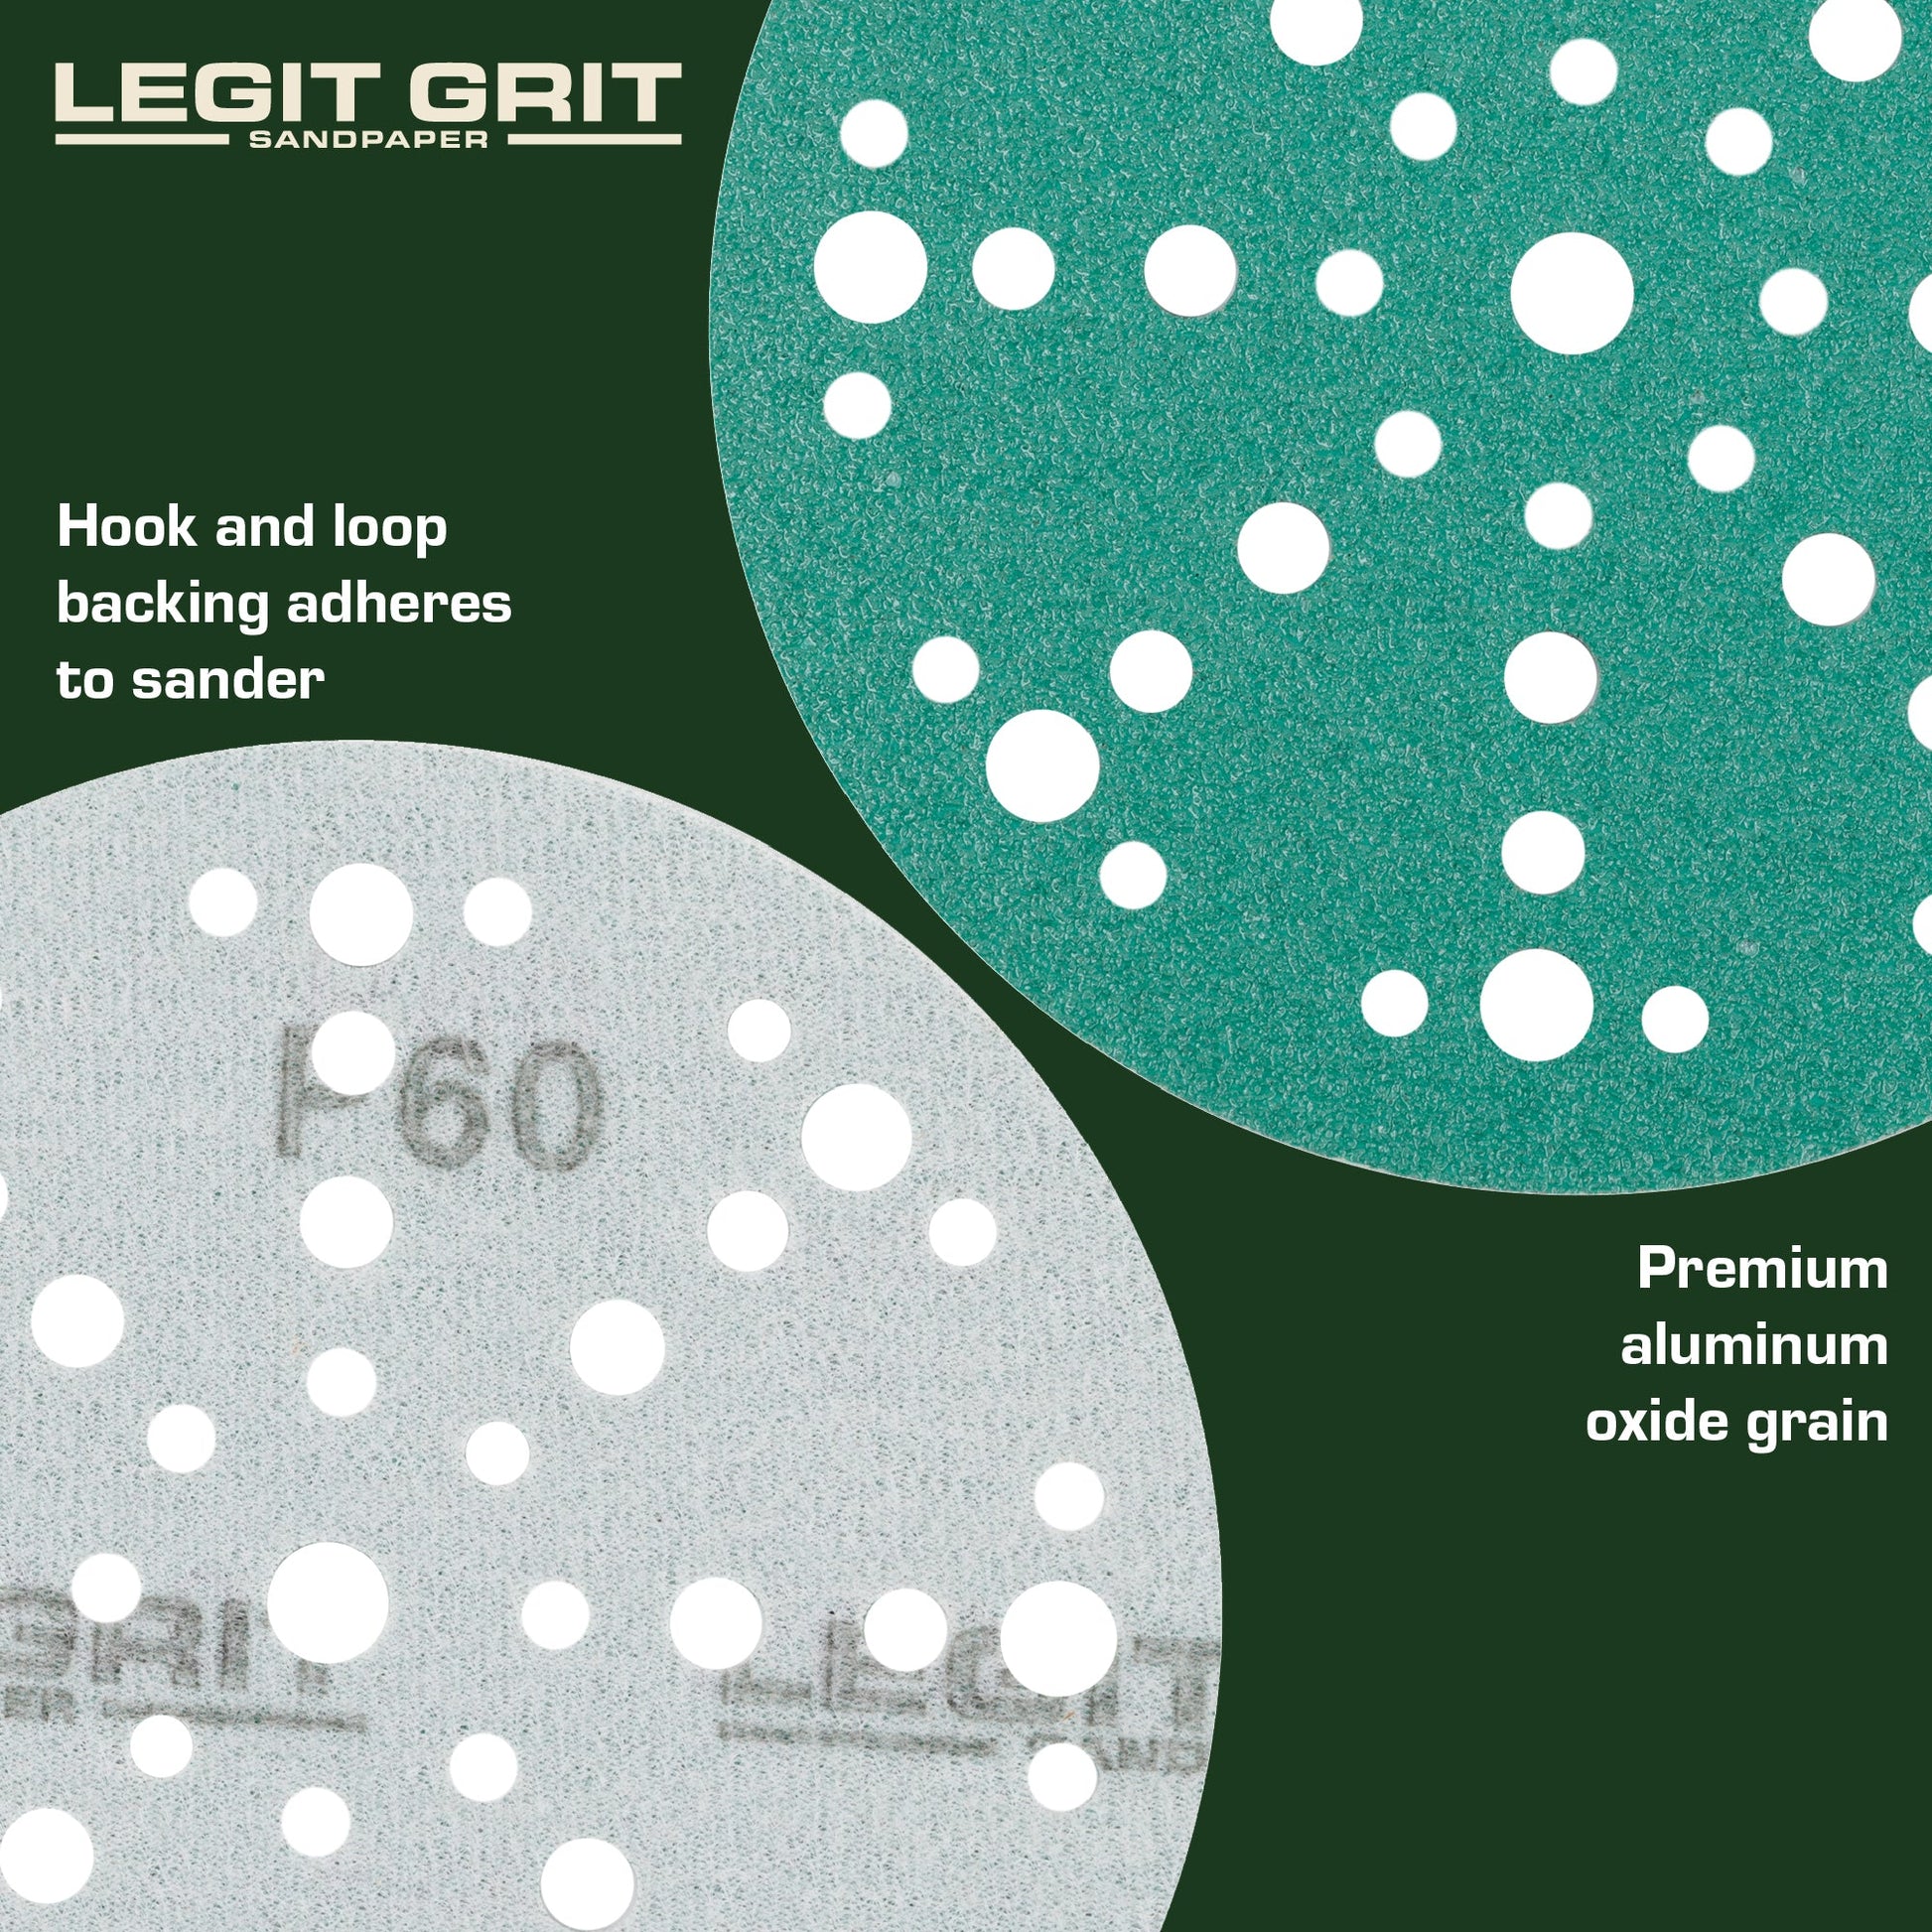 6-Inch 49-Hole Sanding Discs, Single Grit, 50/100/150-Packs - Legit Grit